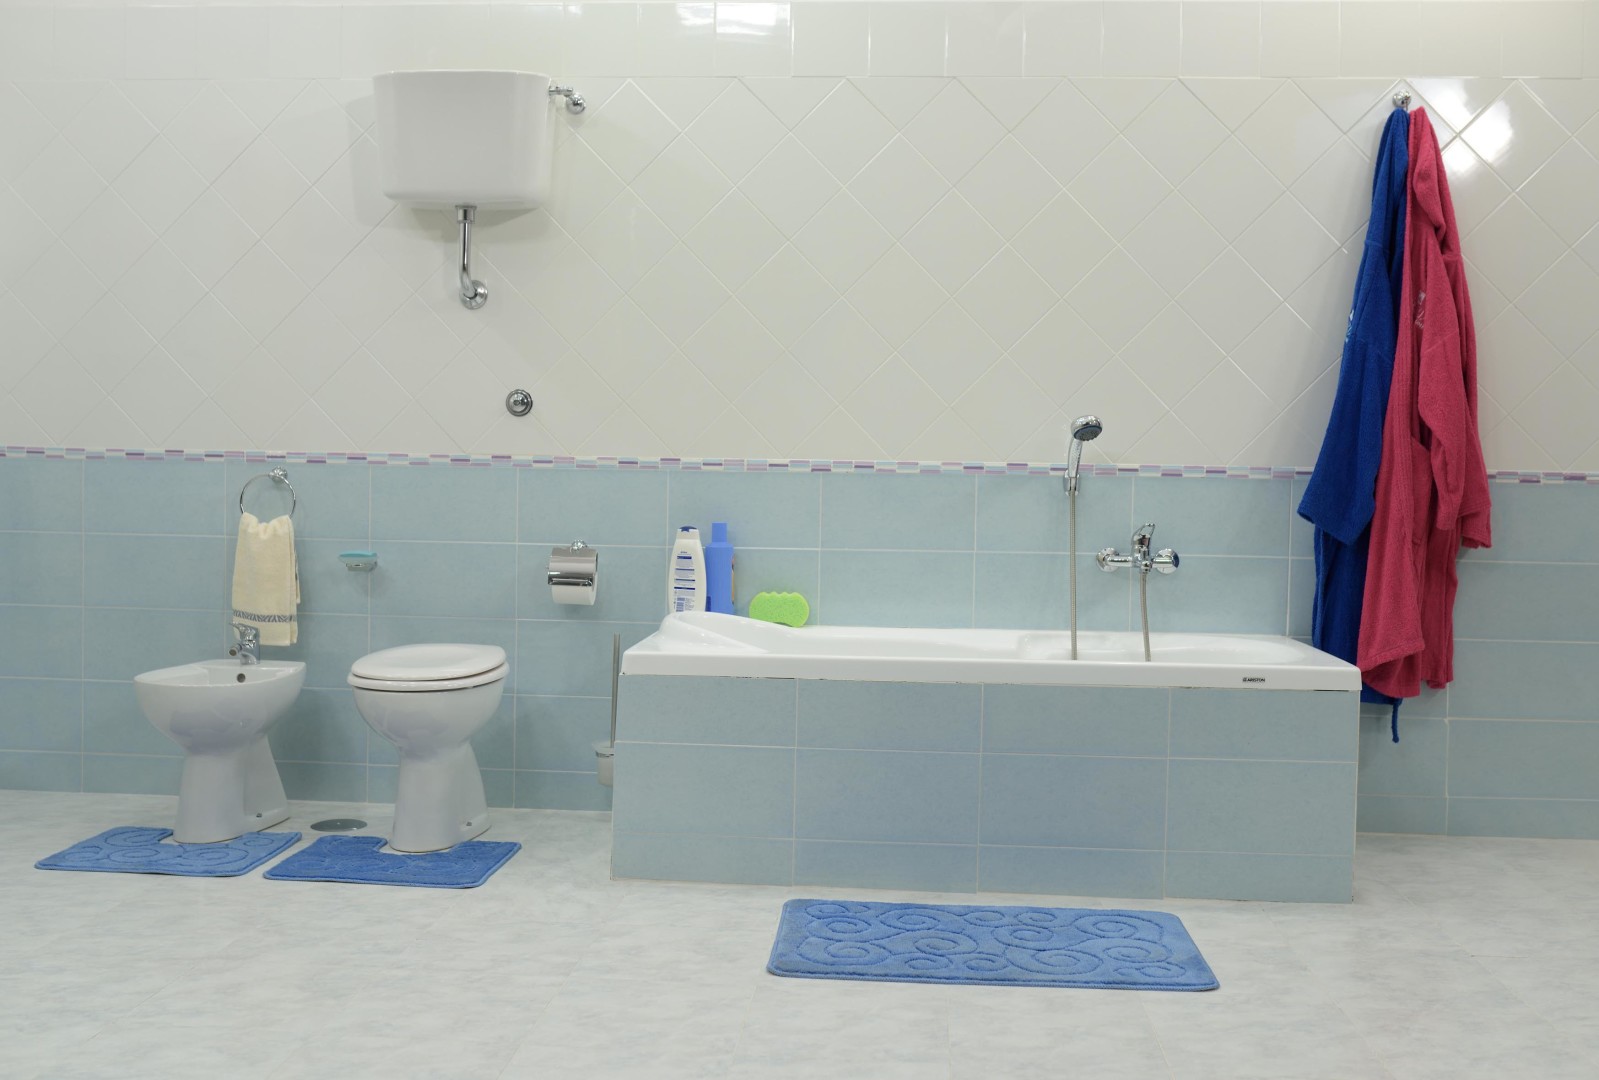 Vasca o doccia: cosa installare in bagno | Docciatime.it trasforma da bagno in doccia in sole 6 ore